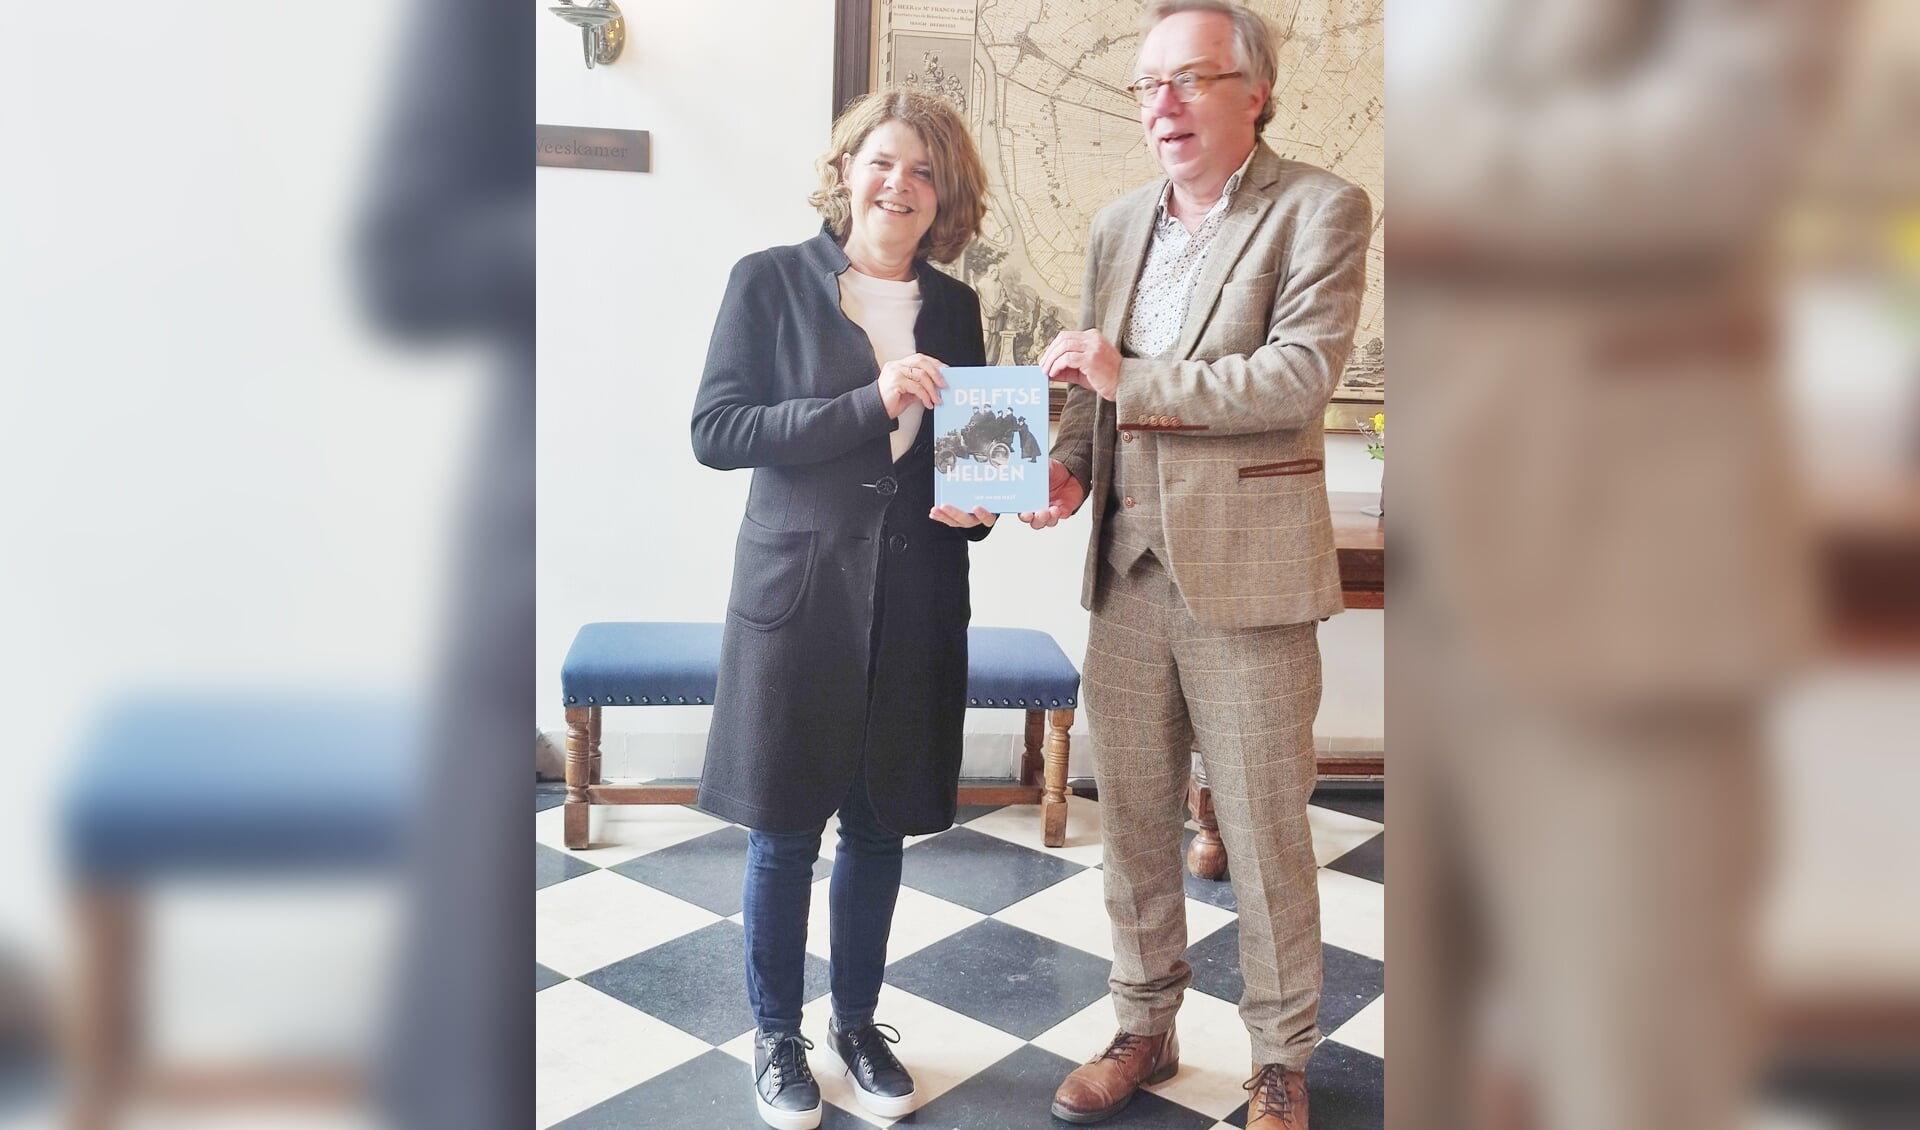 Burgemeester ontving het boek uit handen van Van der Mast